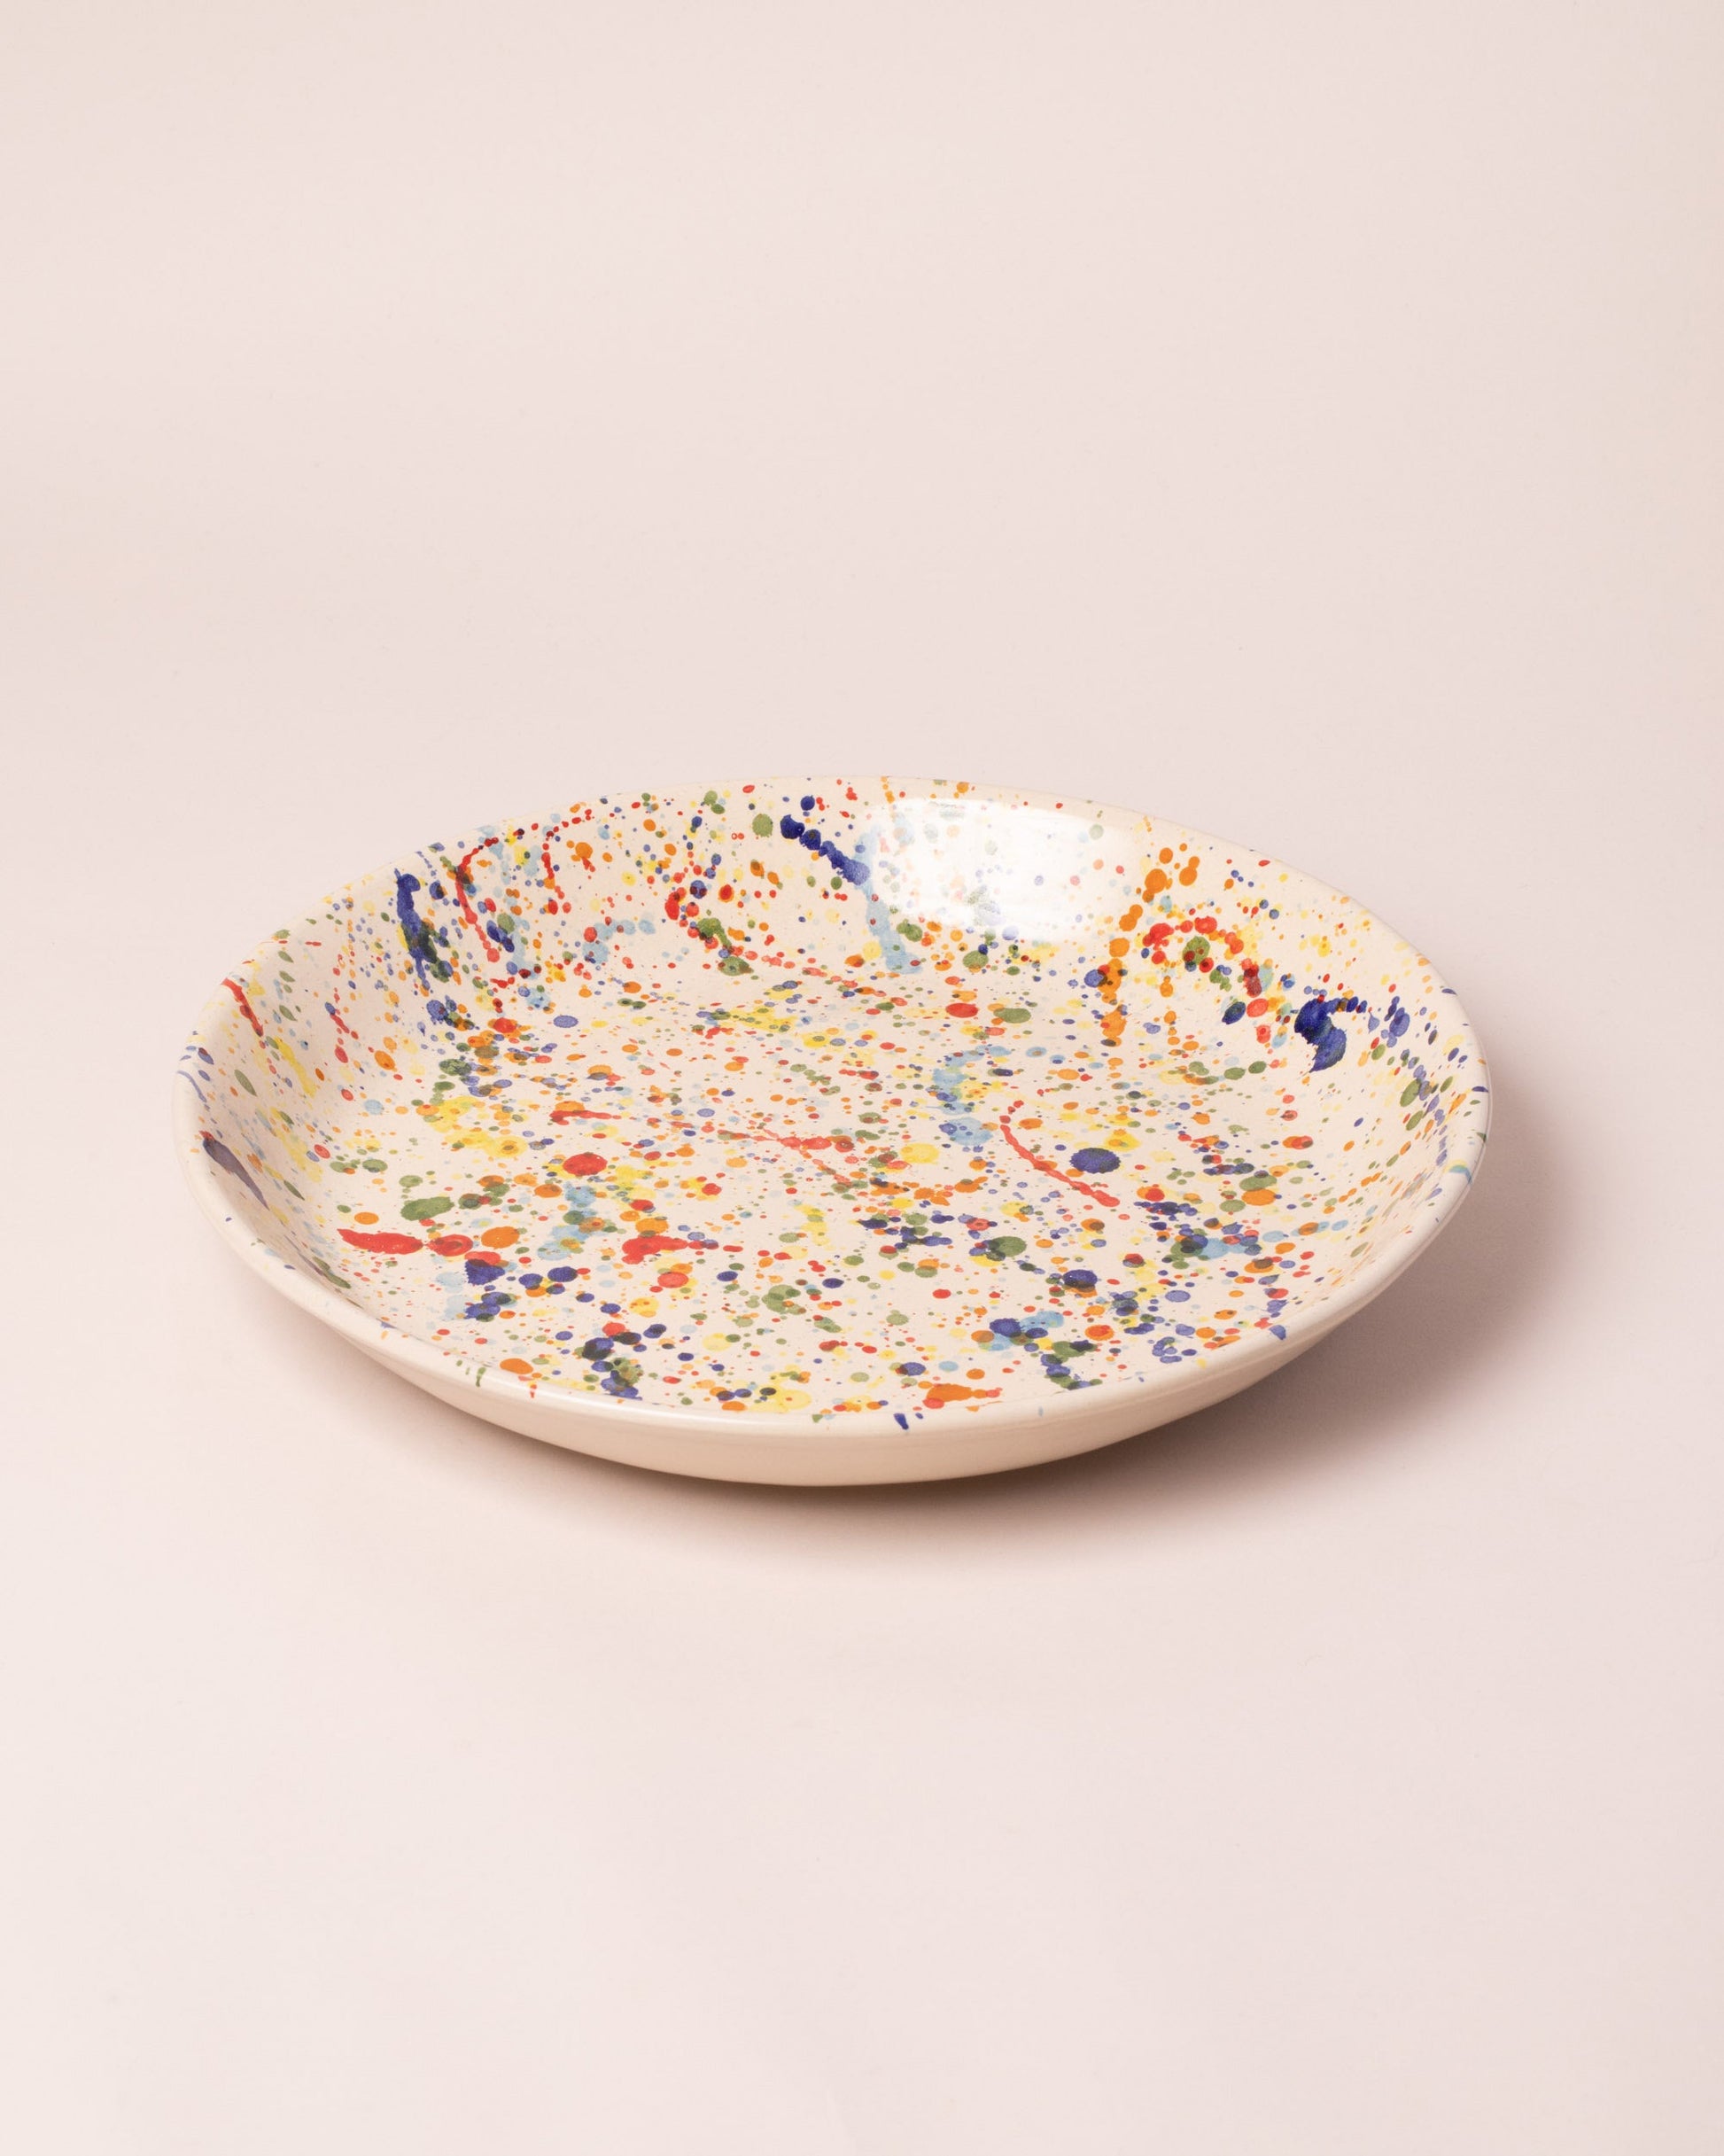 La Ceramica Vincenzo Del Monaco Colored Drops Circular Serving Dish on light color background.